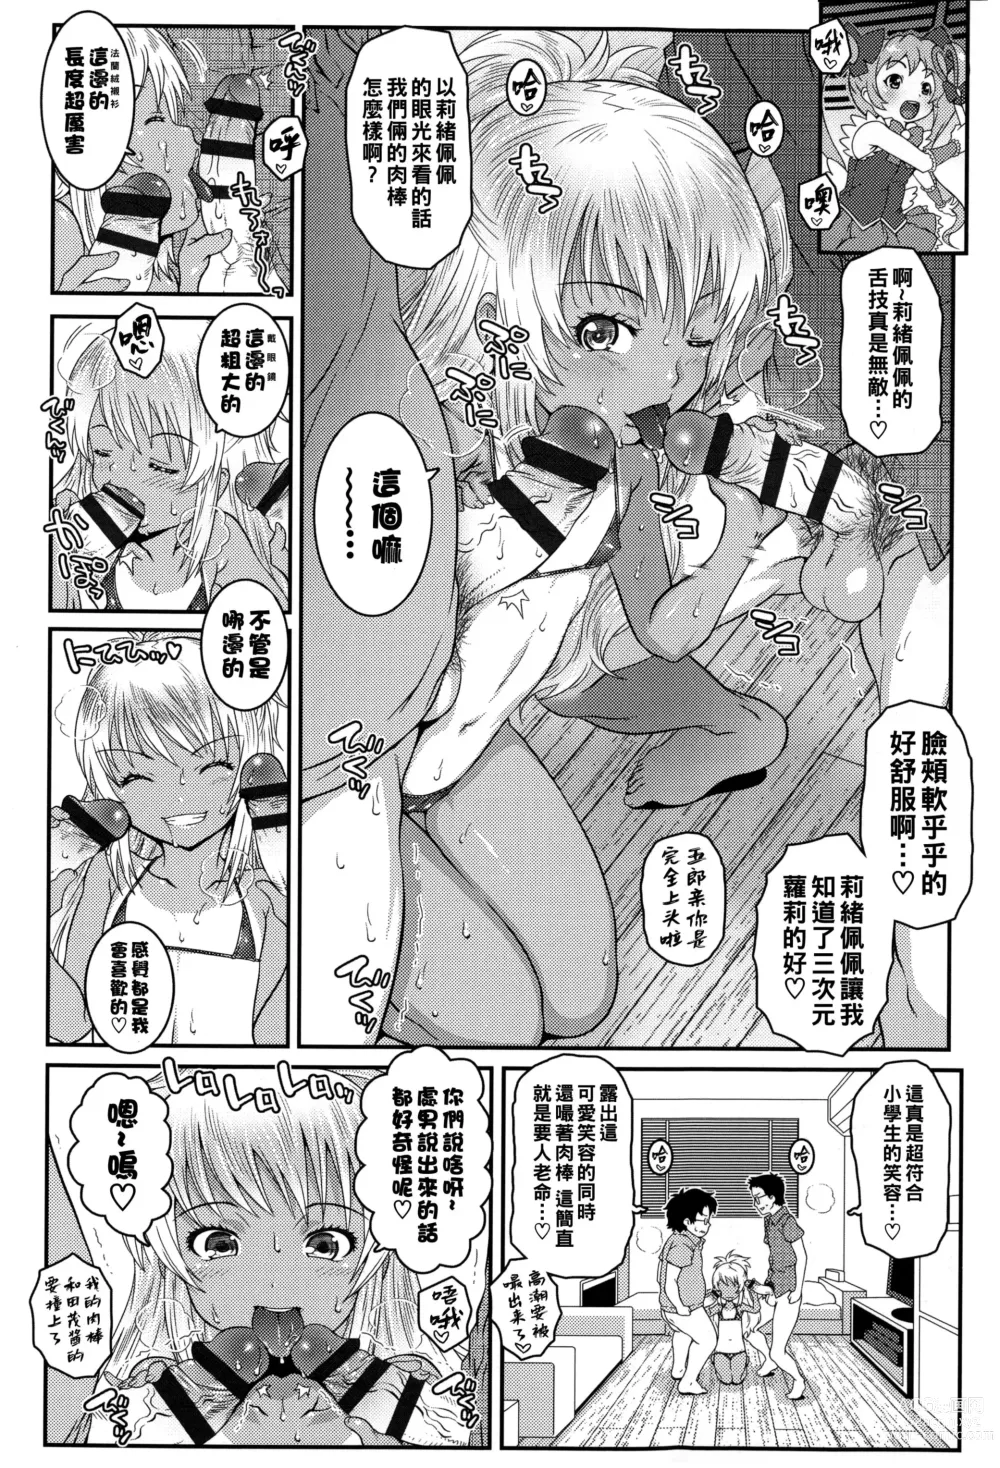 Page 6 of manga Bitch!!